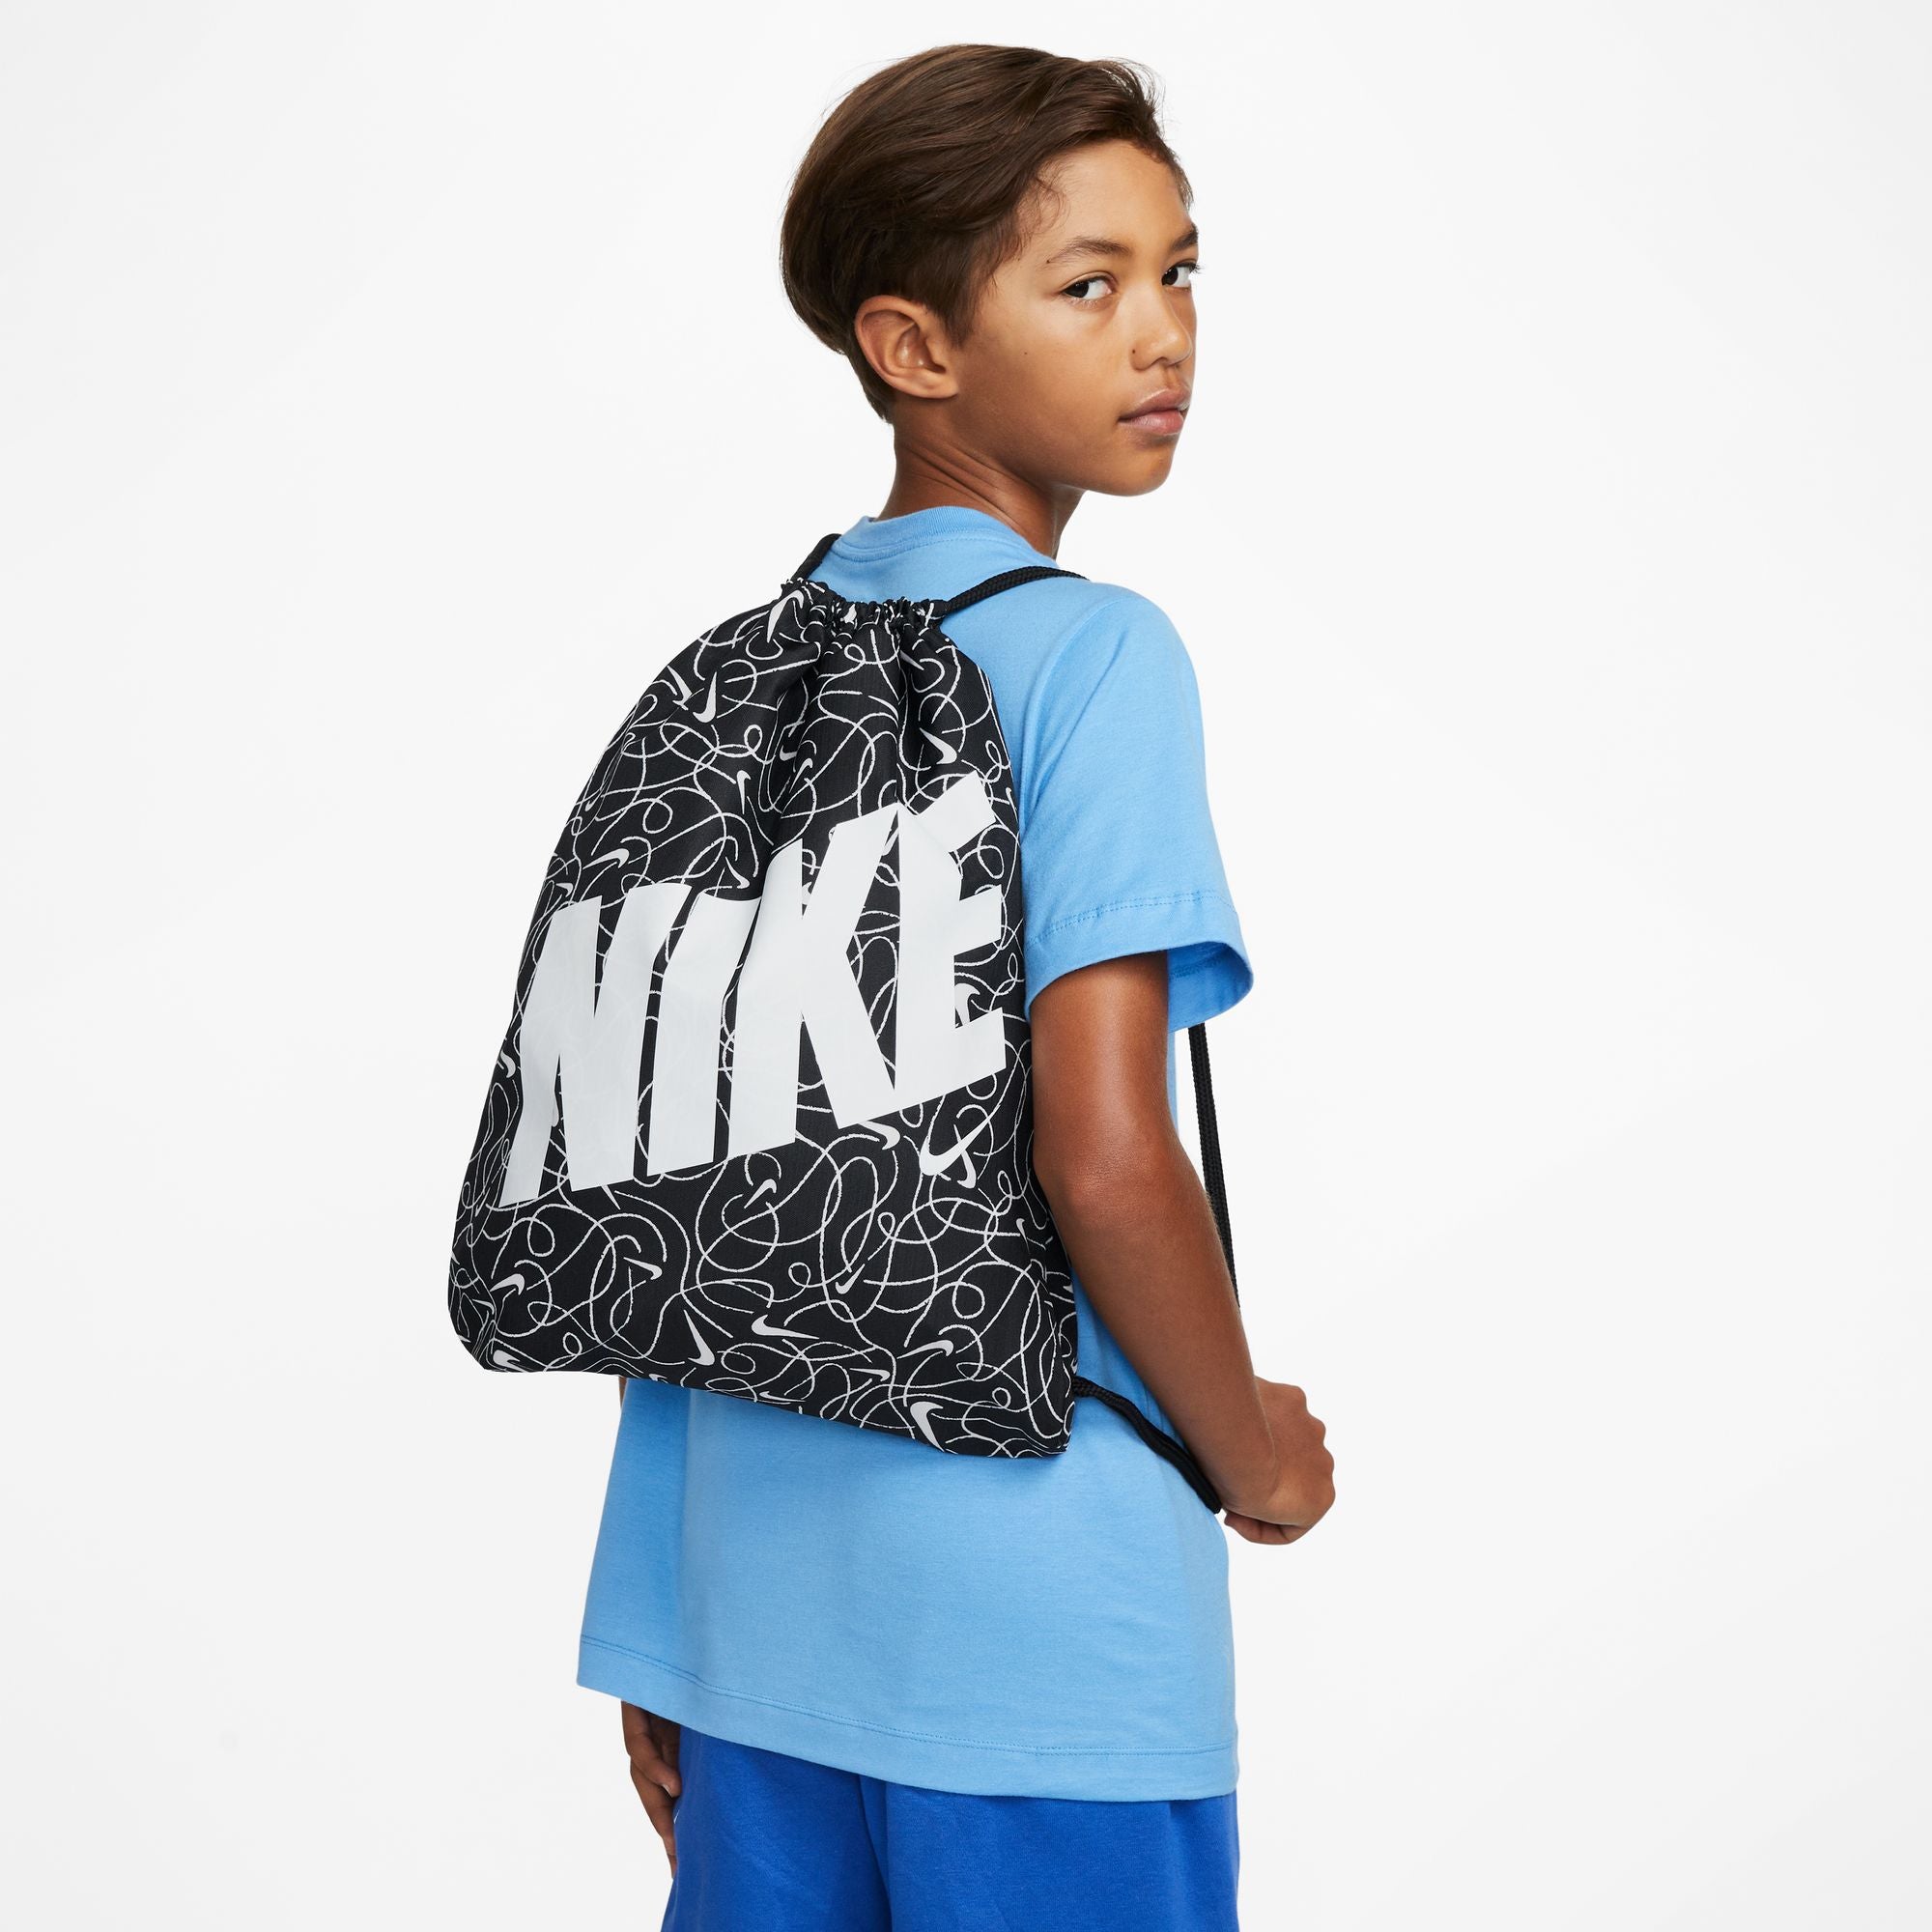 Kids All Over Print Gymsack Bag